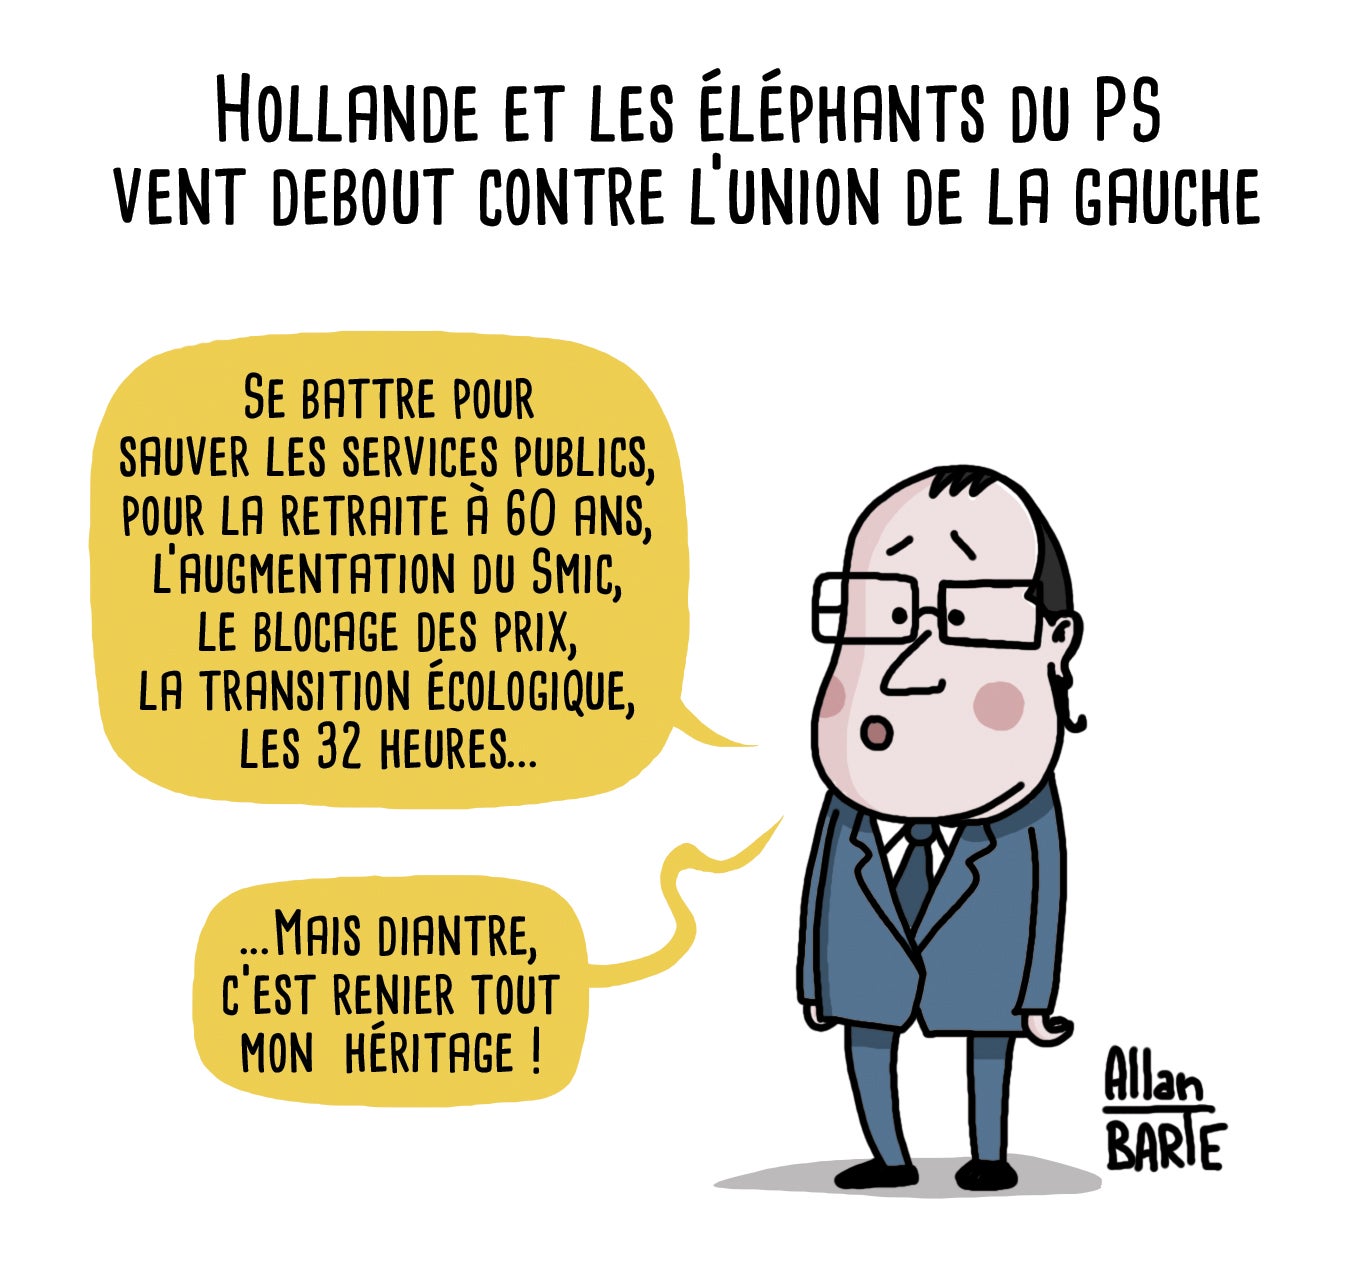 Hollande et les éléphants du PS vent debout contre l'union de la gauche - Allan Barte : r/france